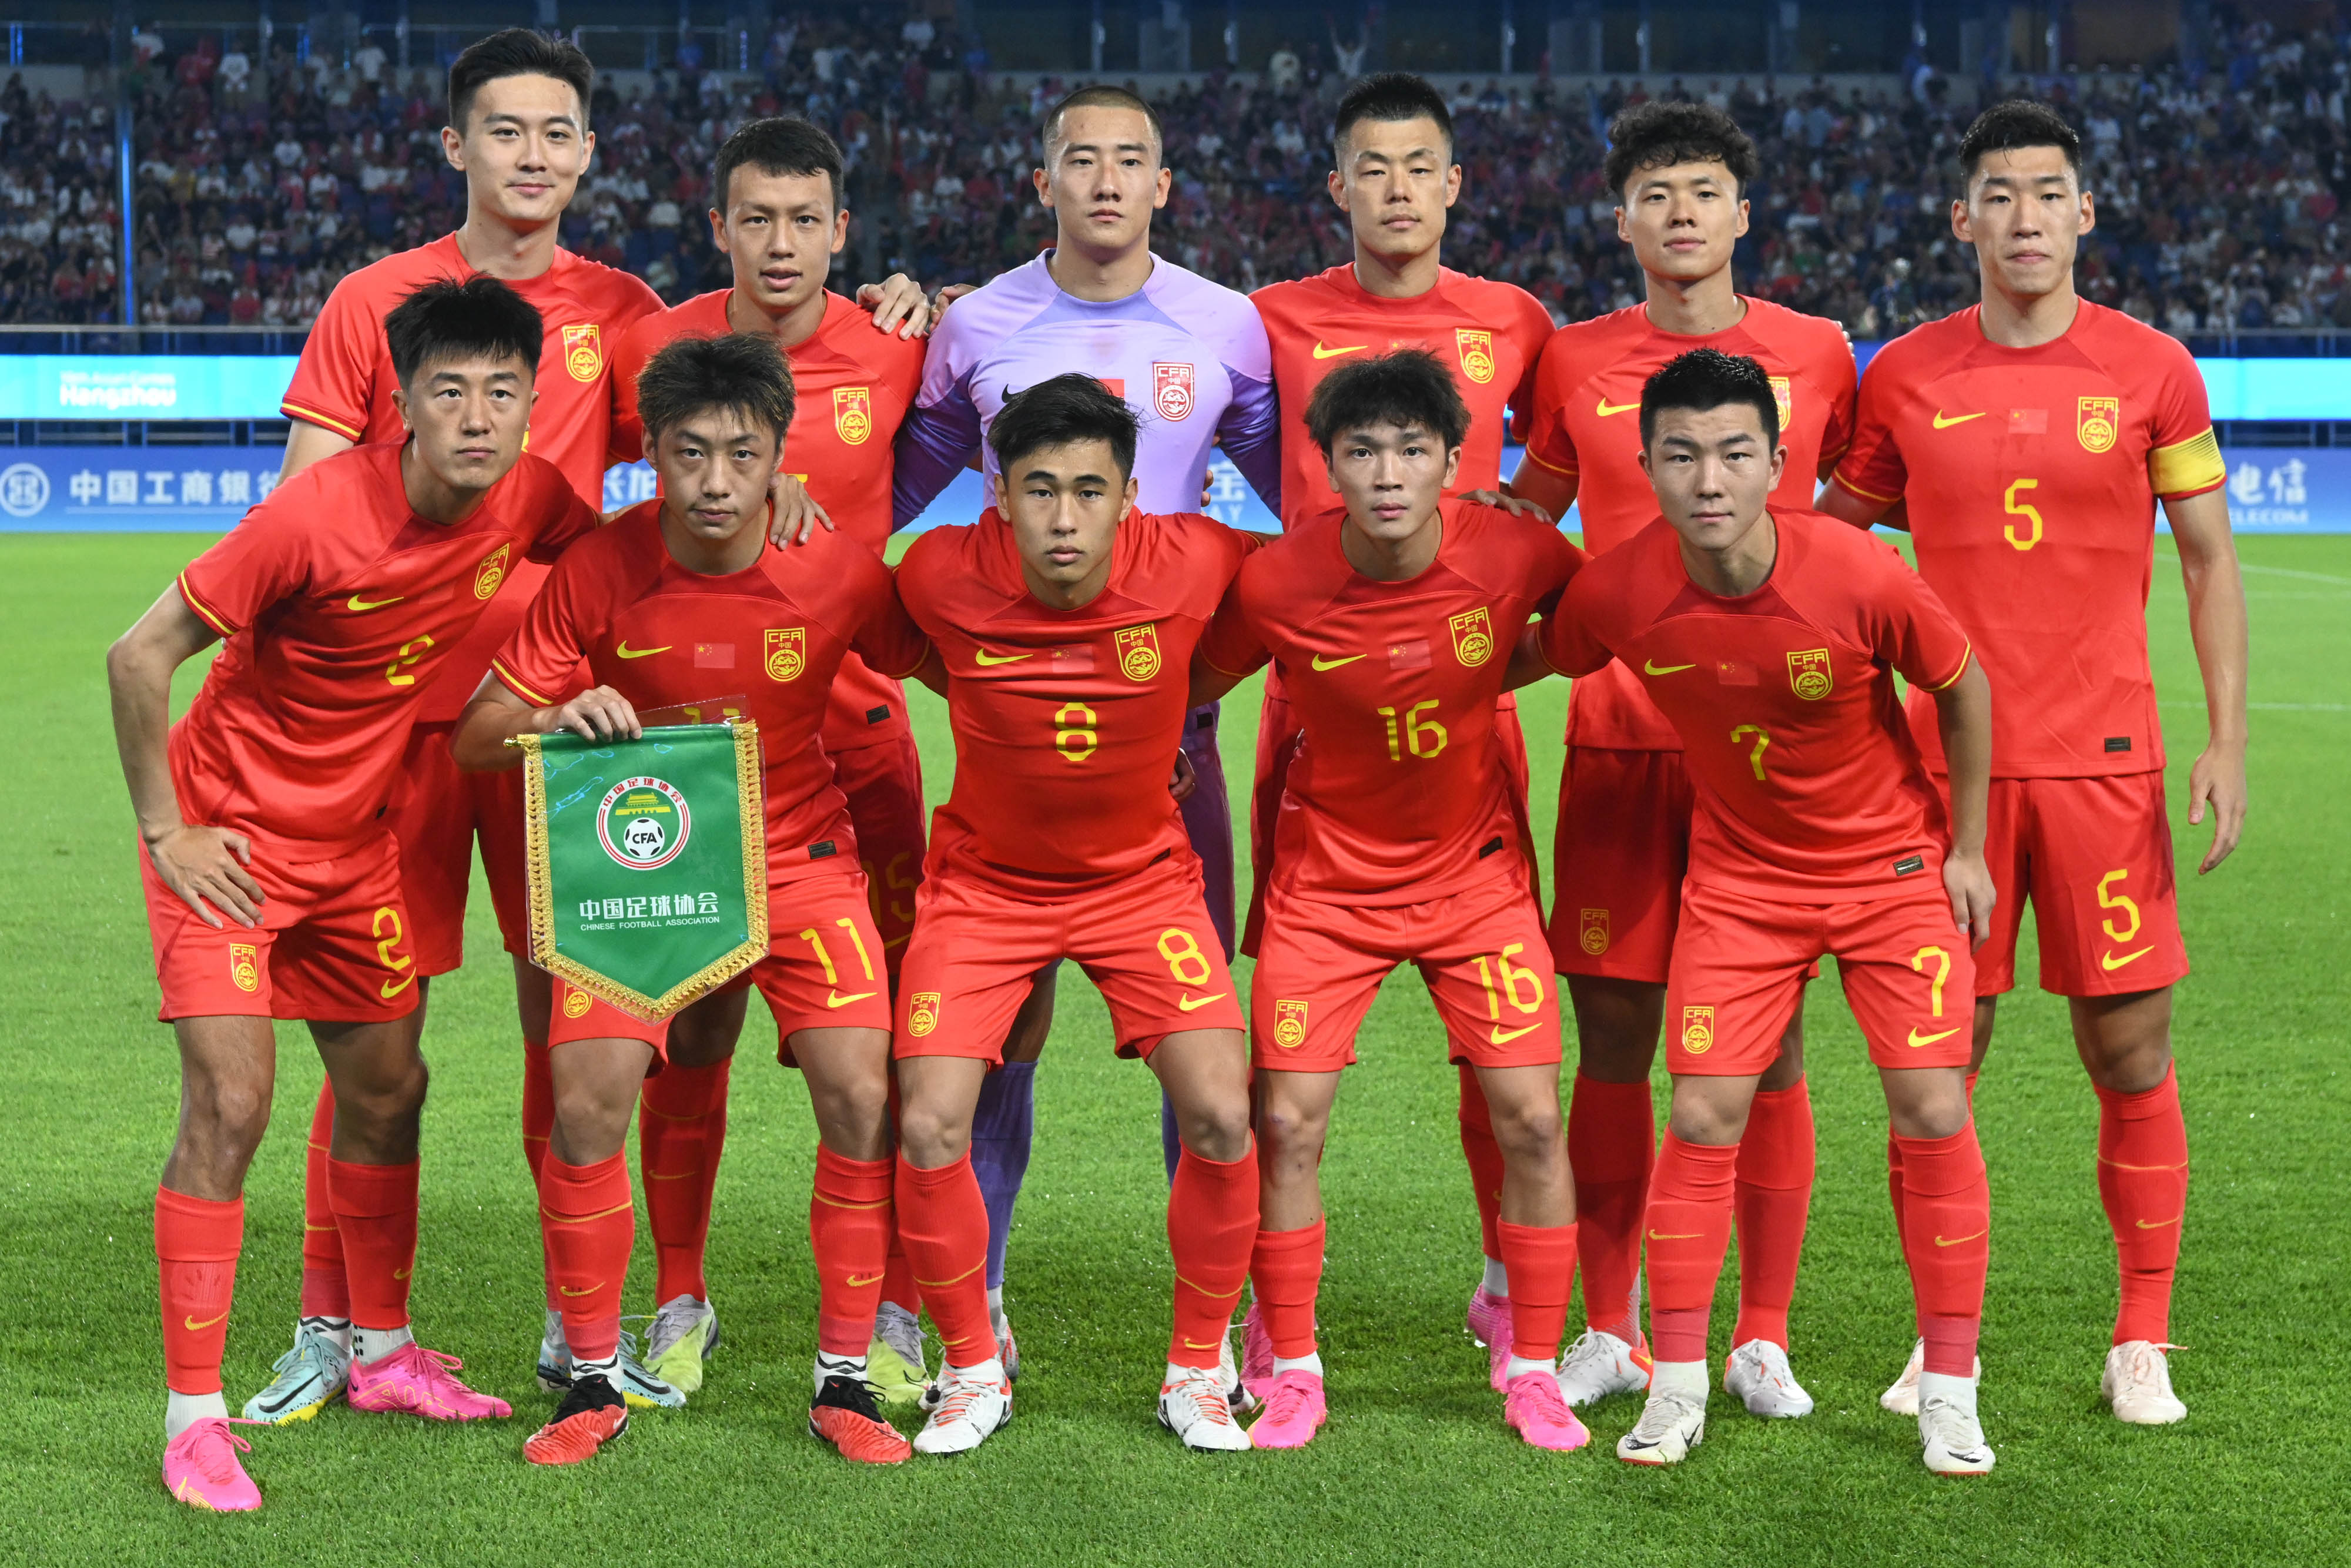 比赛将于北京时间今天晚上8点进行,赛前中国男足亚运队公布首发阵容